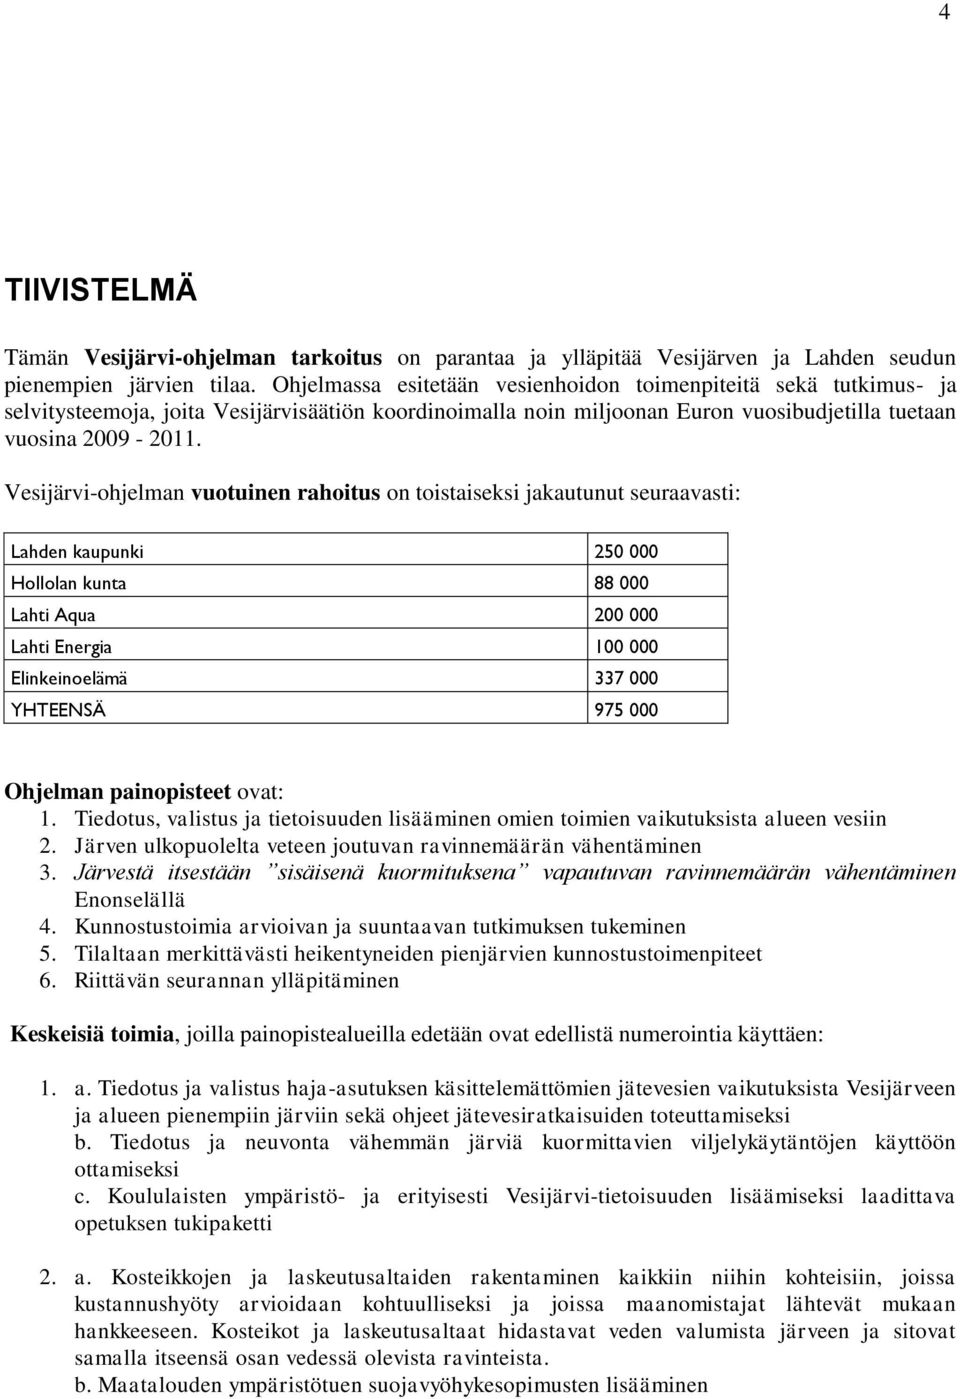 Vesijärvi-ohjelman vuotuinen rahoitus on toistaiseksi jakautunut seuraavasti: Lahden kaupunki 250 000 Hollolan kunta 88 000 Lahti Aqua 200 000 Lahti Energia 100 000 Elinkeinoelämä 337 000 YHTEENSÄ